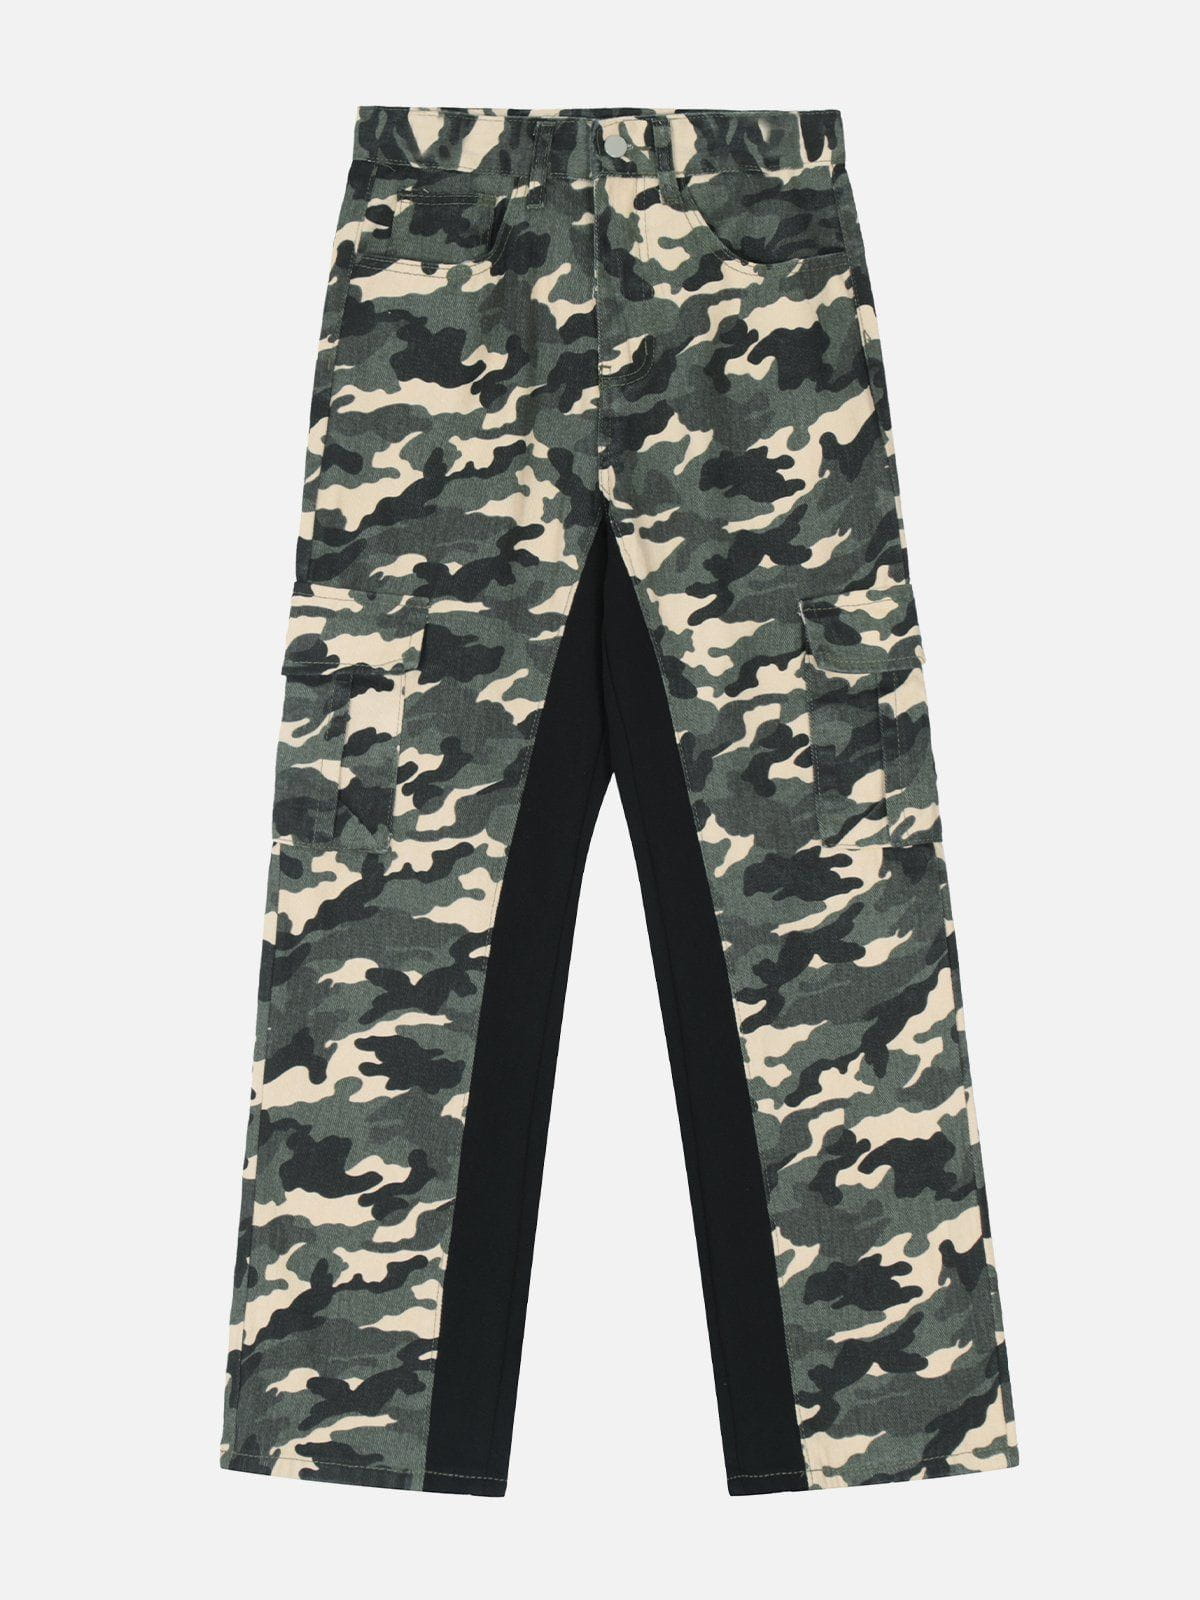 Eprezzy® - Splicing Camouflage Print Pants Streetwear Fashion - eprezzy.com